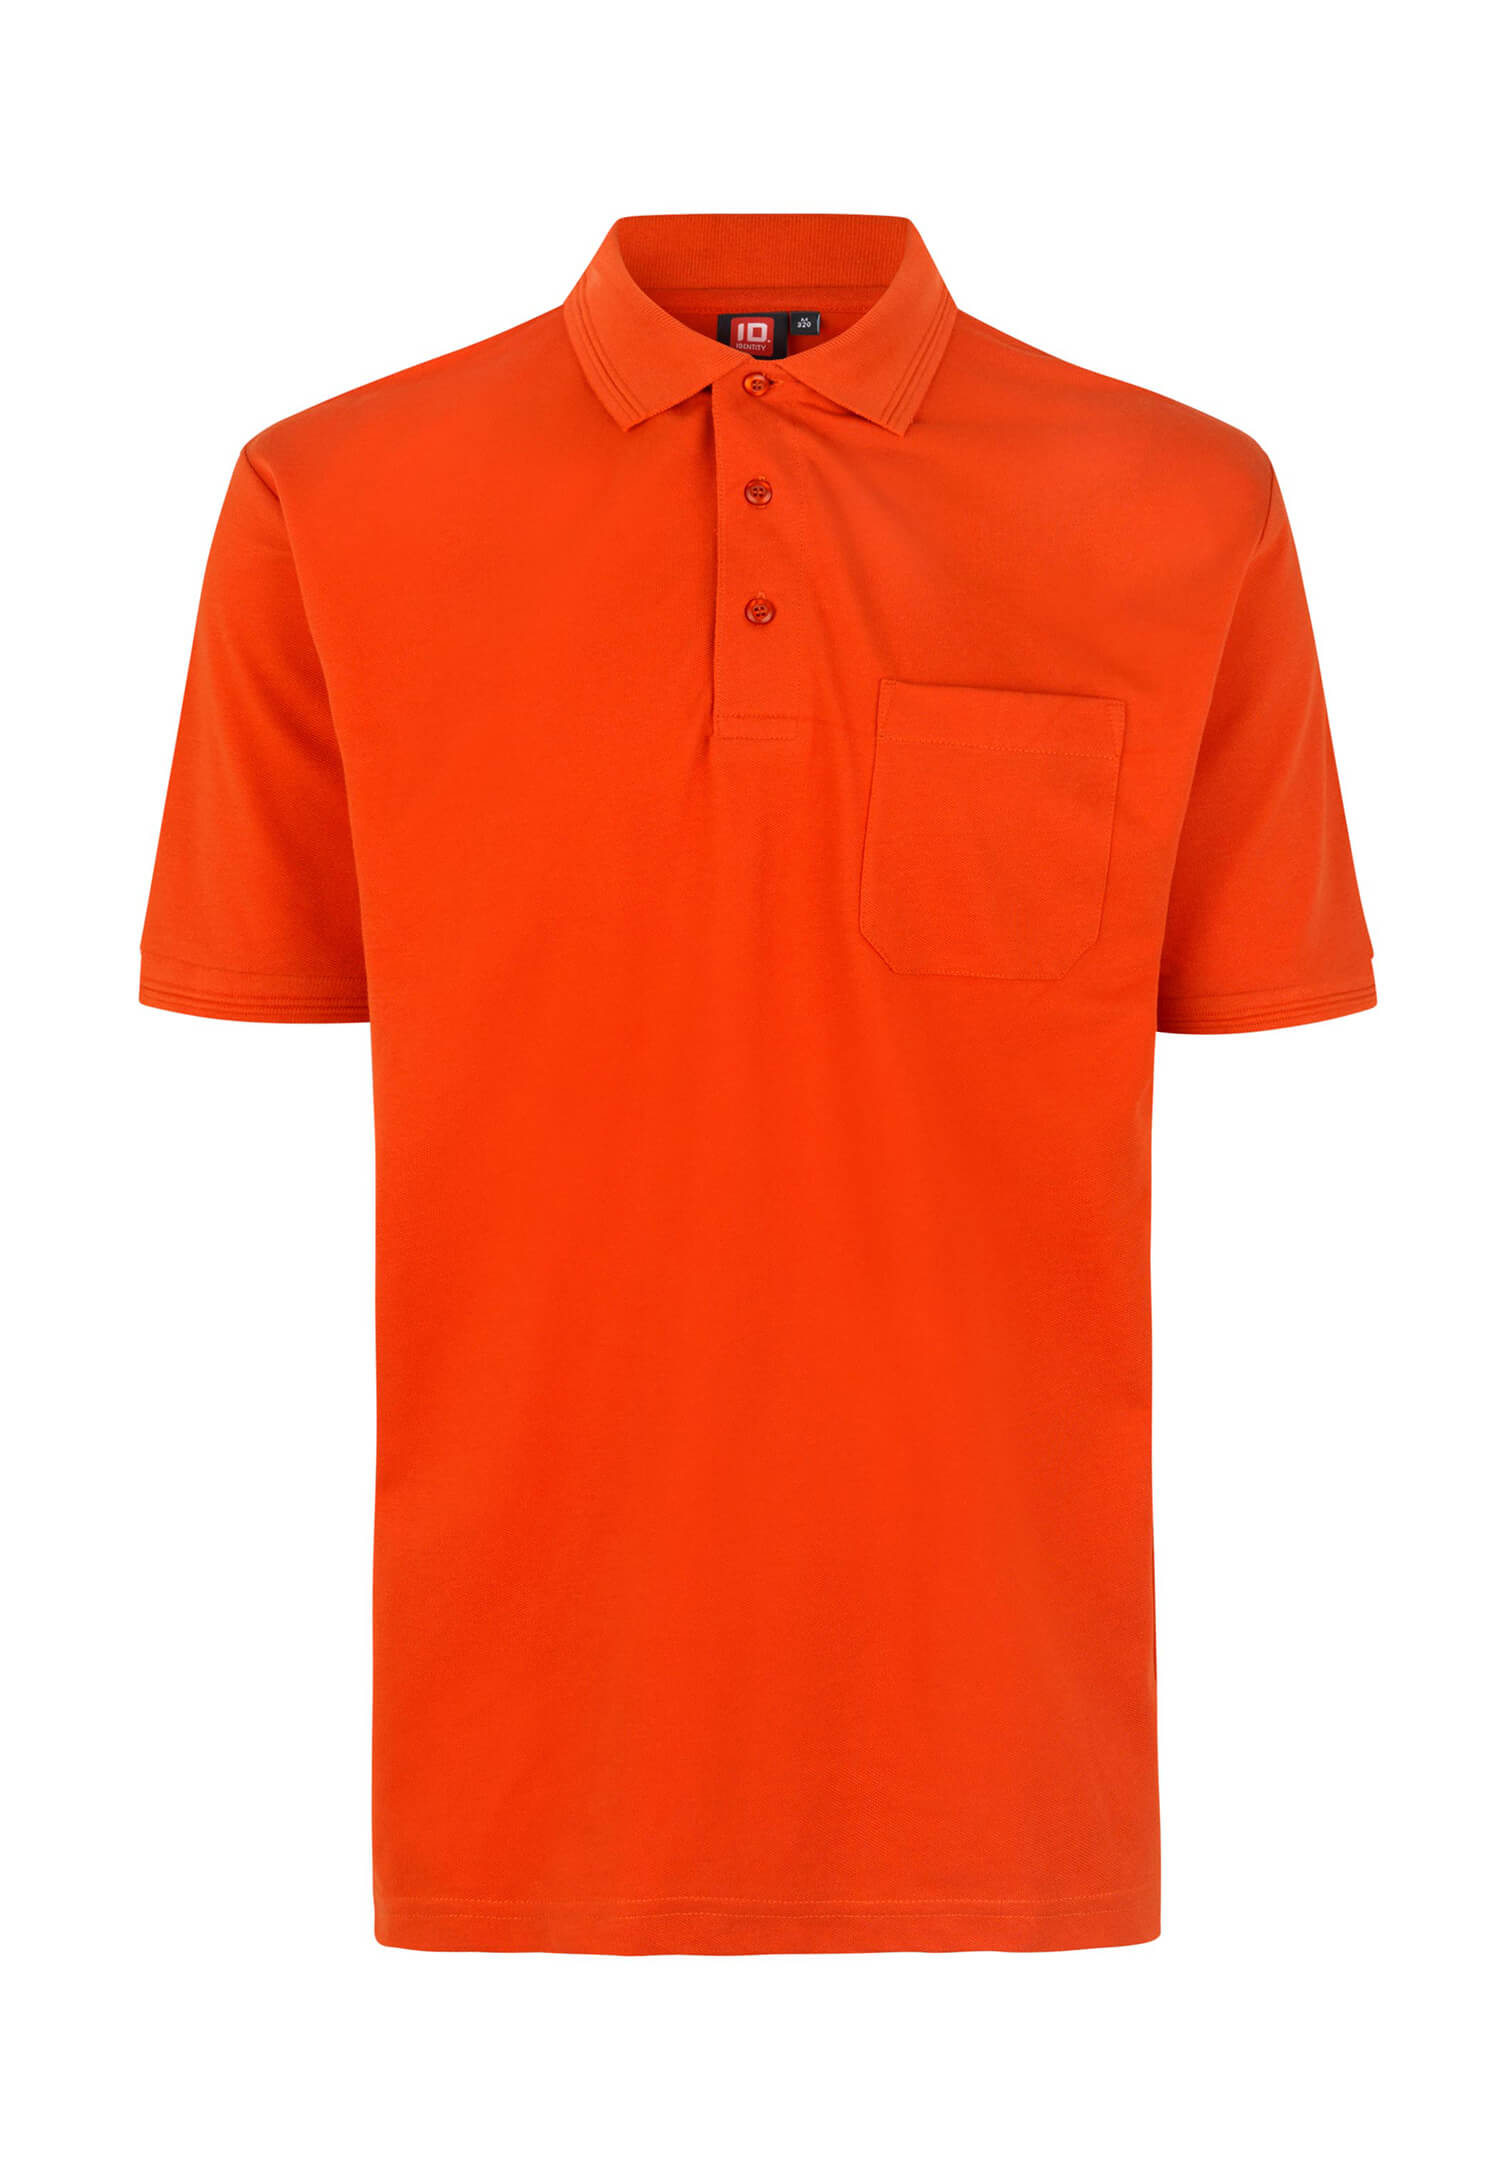 Herren Polo Shirt - Ausführung mit Brusttasche - Orange - M